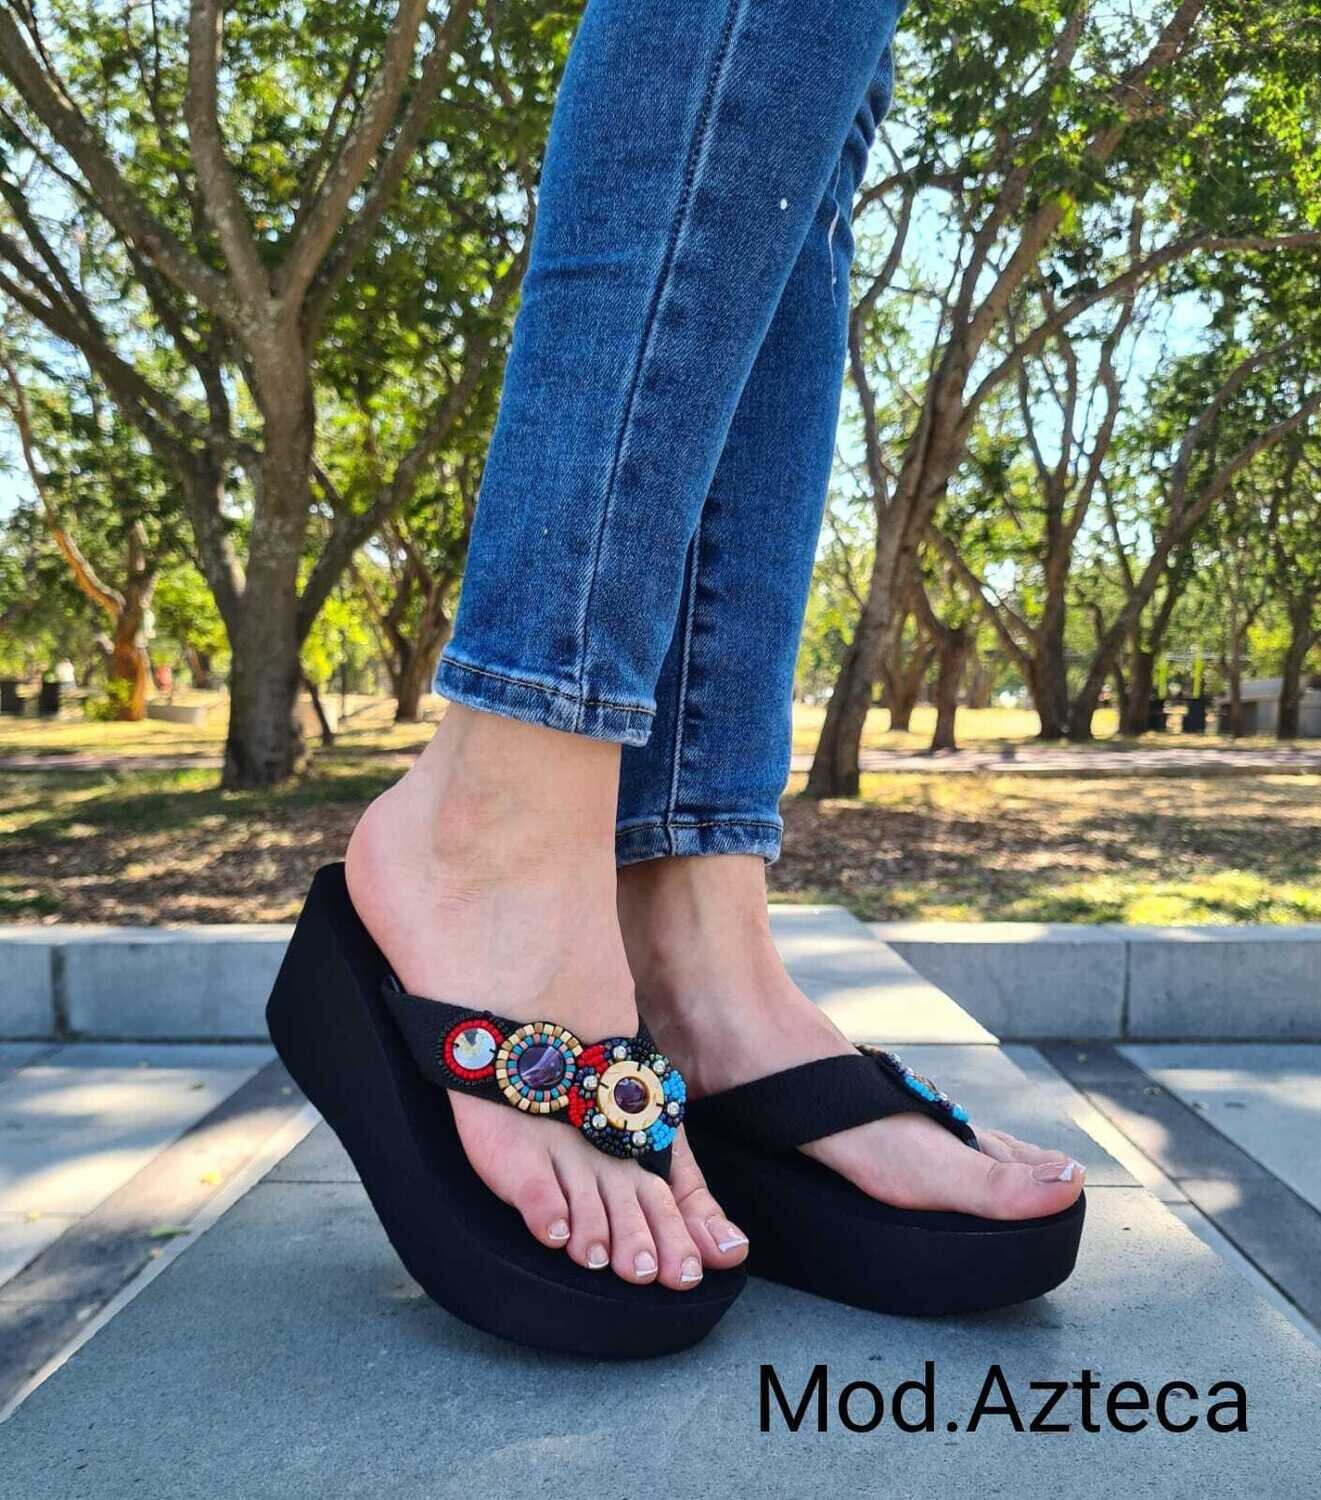 Sandalias de Plataforma modelo Azteca